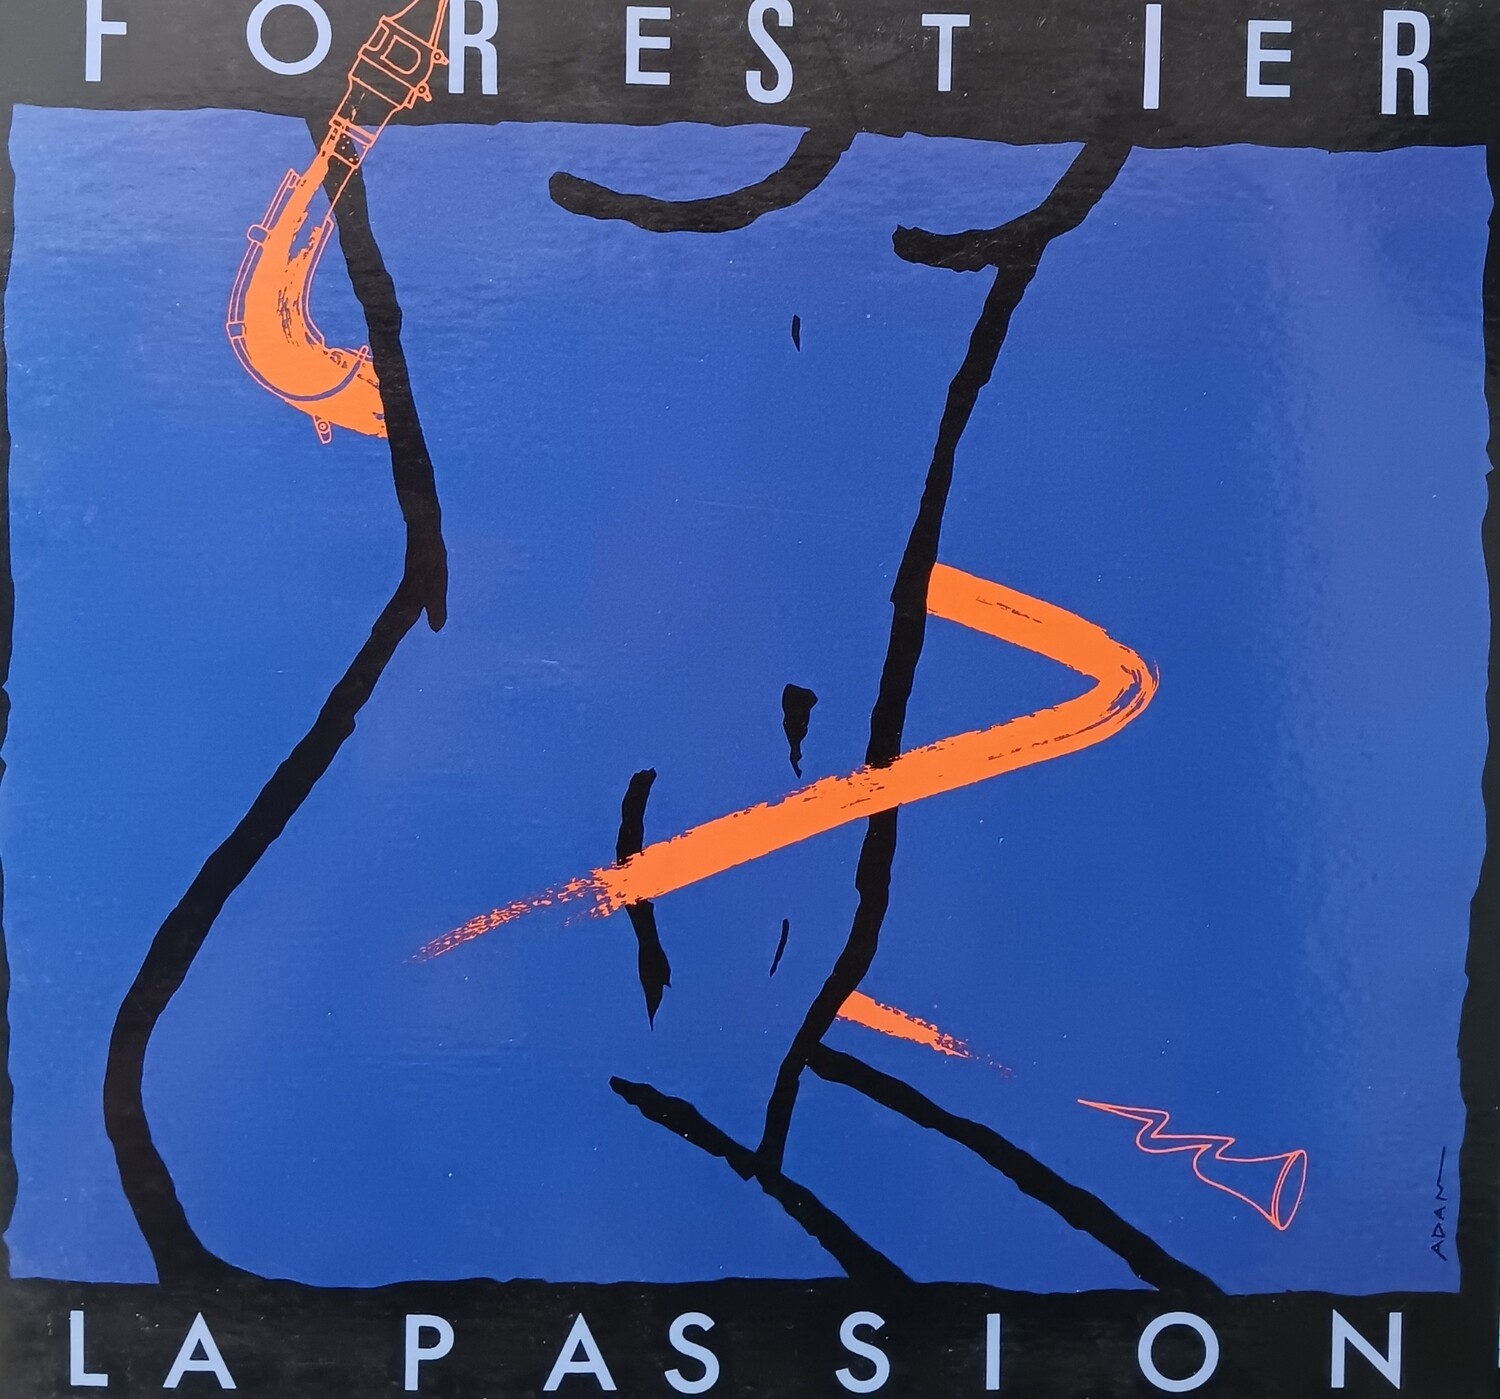 LOUISE FORESTIER - La passion selon Louise